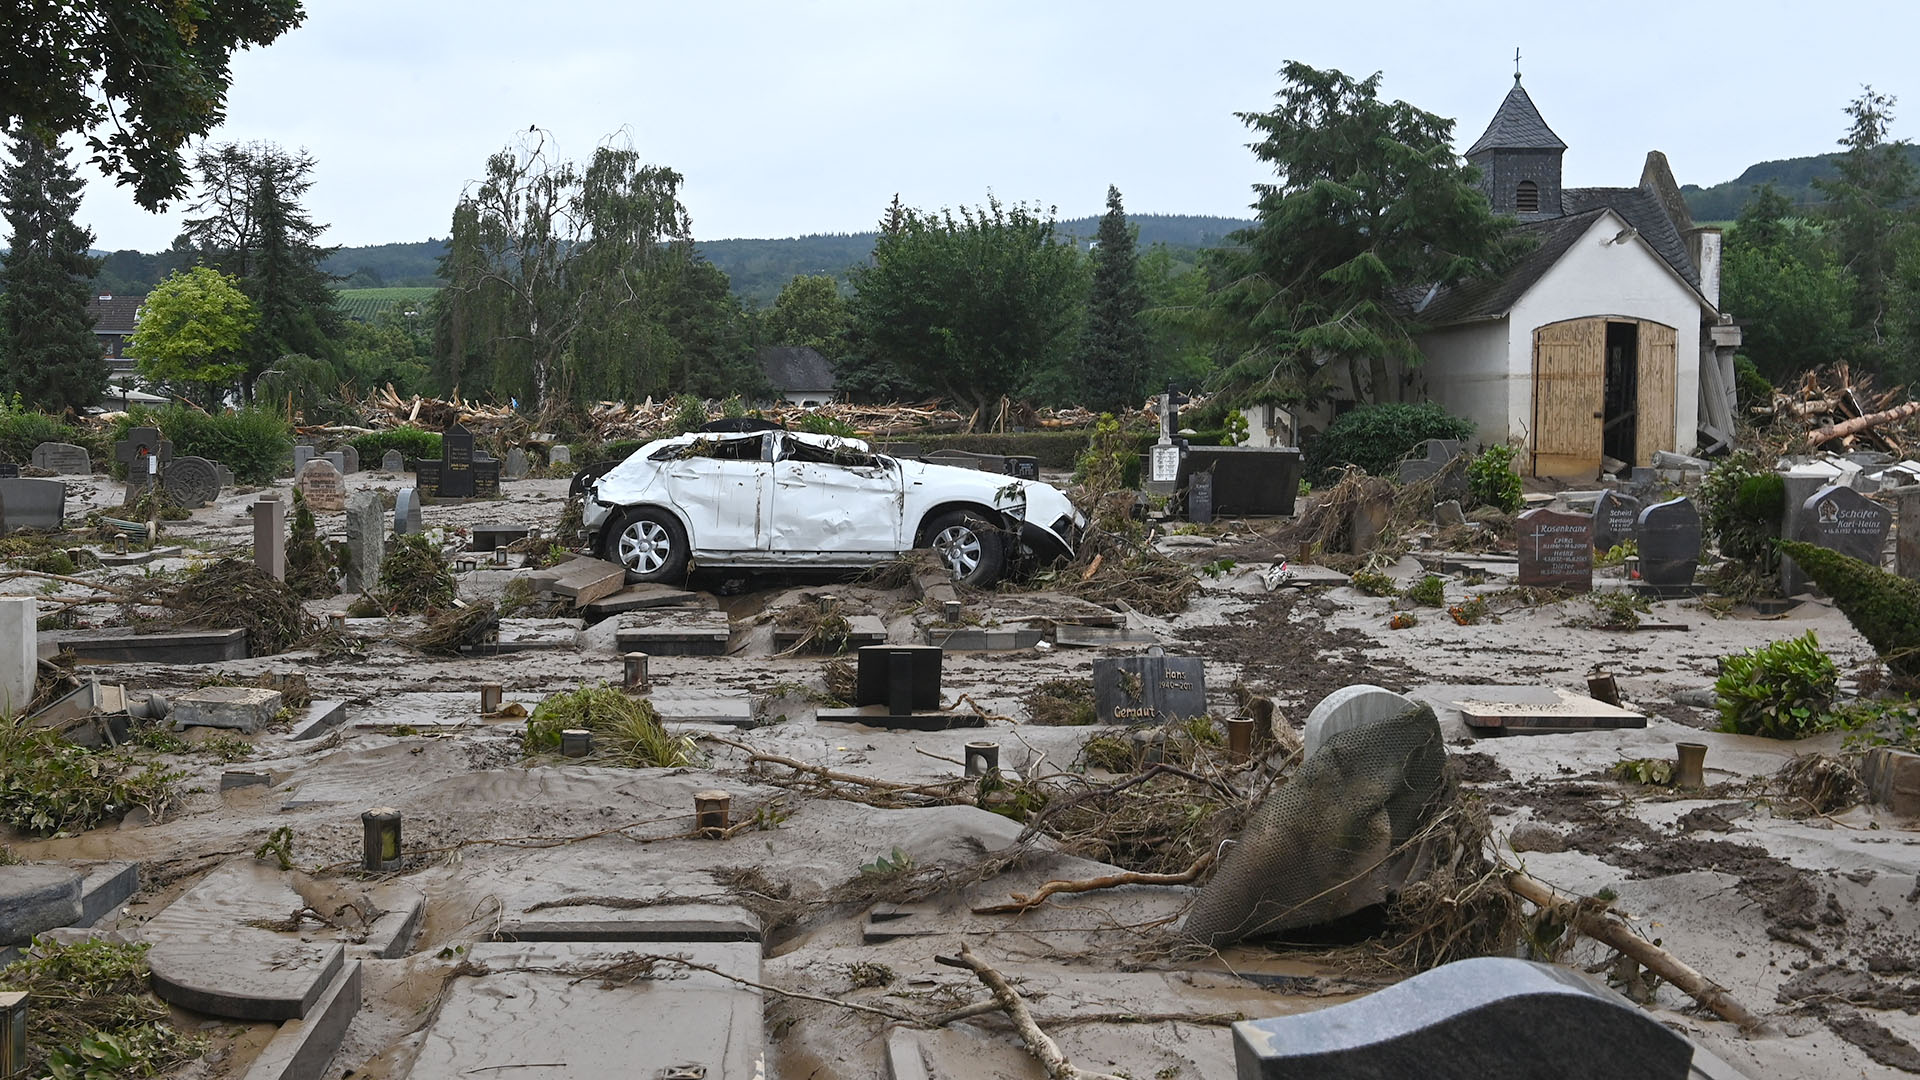 Se muestra un automóvil destruido en el cementerio de Bad Neuenahr-Ahrweiler, en el oeste de Alemania